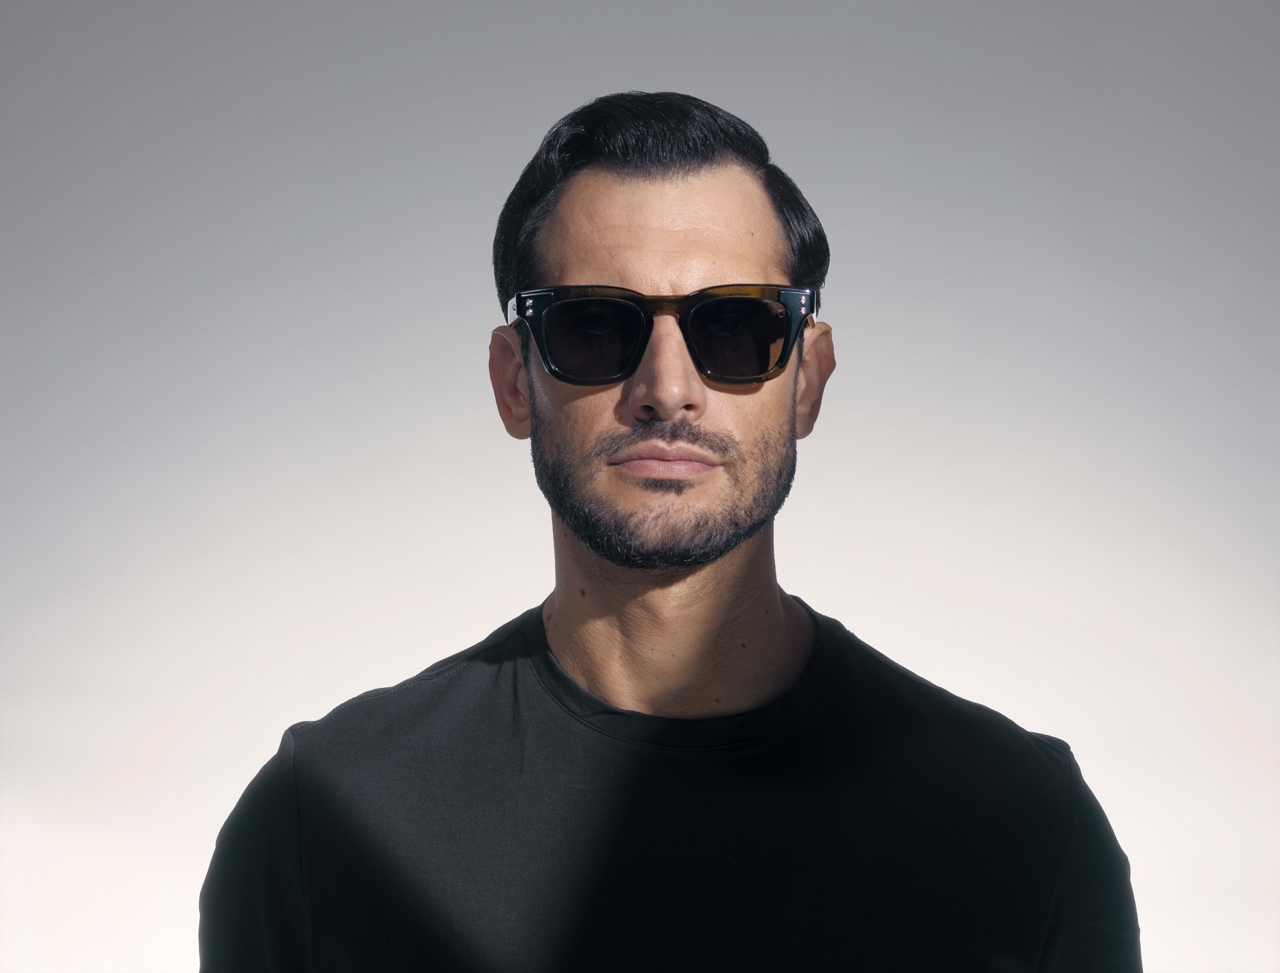 Ara Sunglasses by Akoni Eyewear